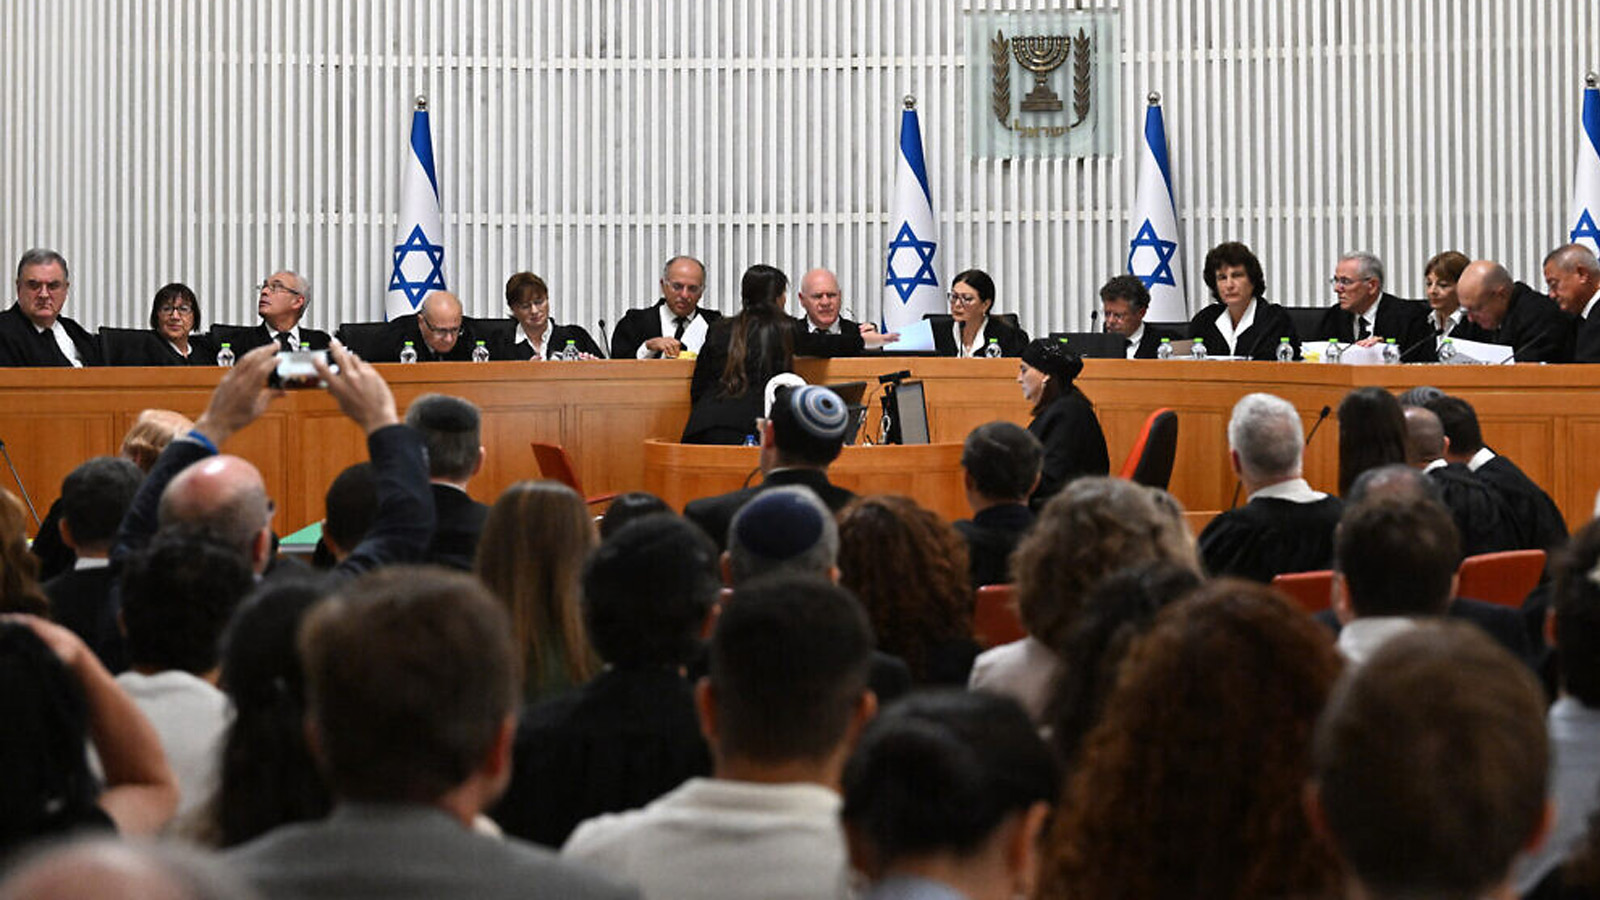  رئيسة المحكمة العليا إستر حايوت وجميع القضاة الـ 14 الآخرين يستمعون إلى التماسات ضد 